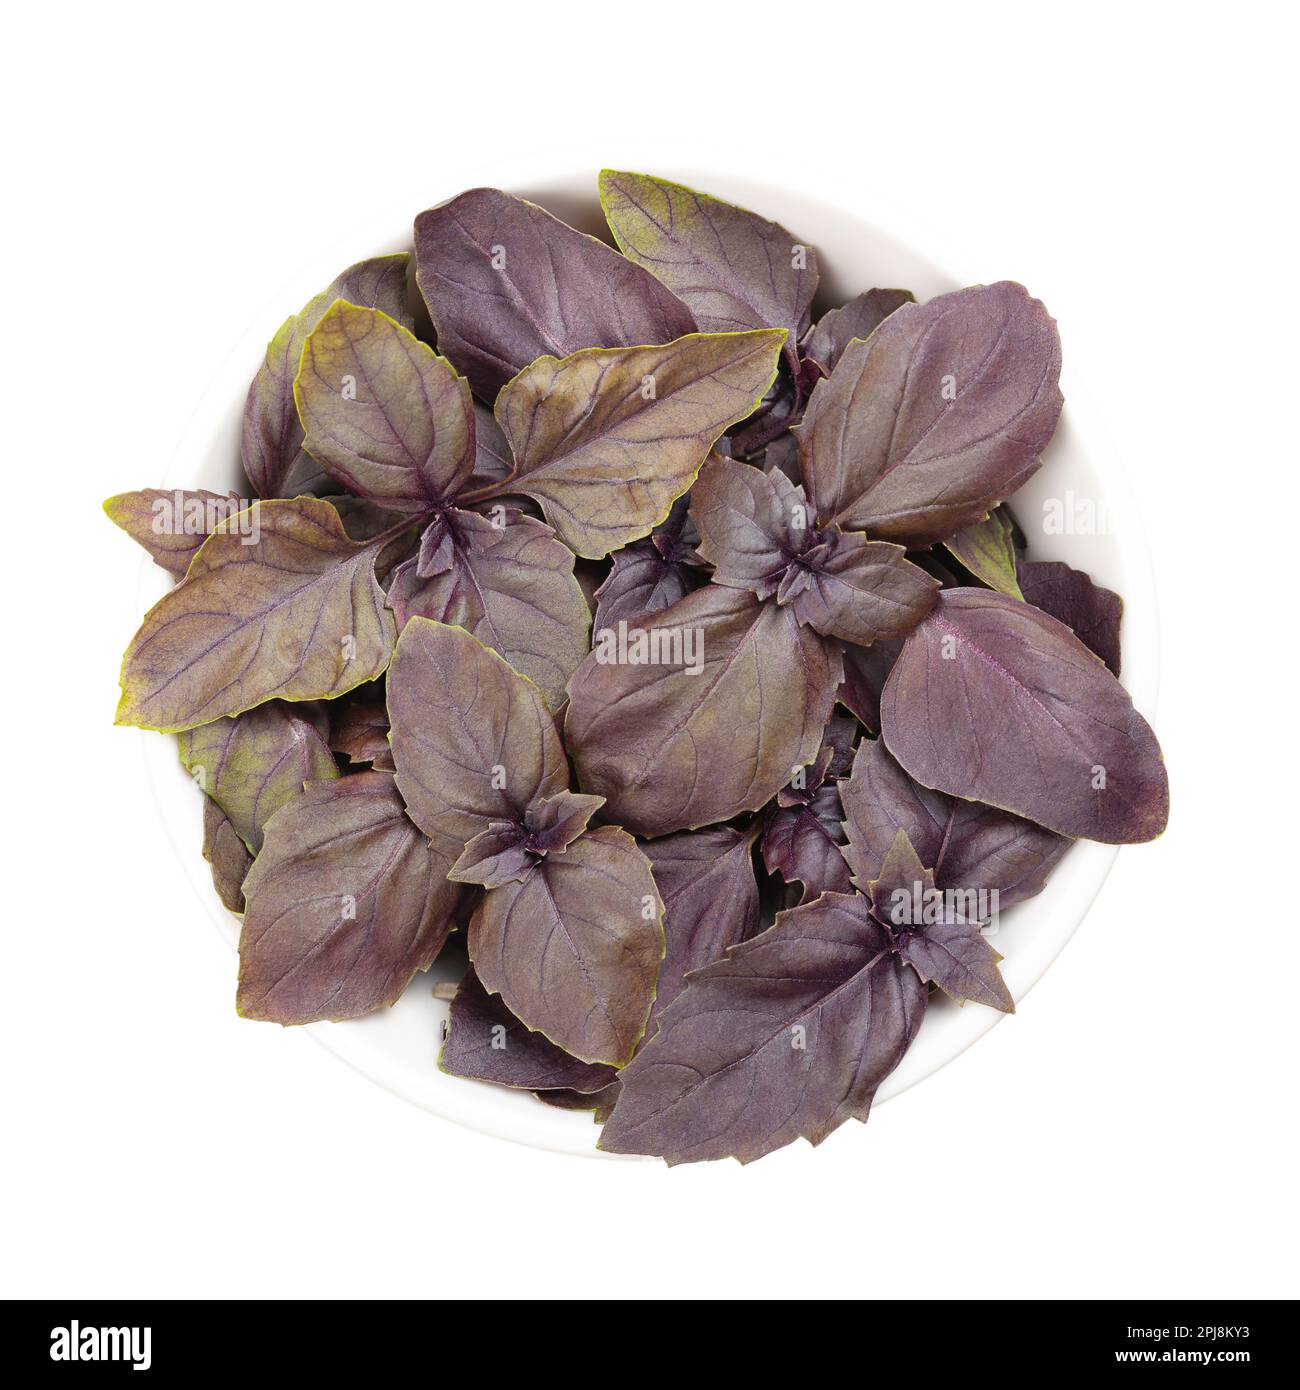 Rotes Basilikum, frische Blätter in einer weißen Schüssel. Ocimum basilicum Purpurascens, eine Variante von süßem Basilikum, mit rötlich-violetten Blättern und starkem Geschmack. Stockfoto